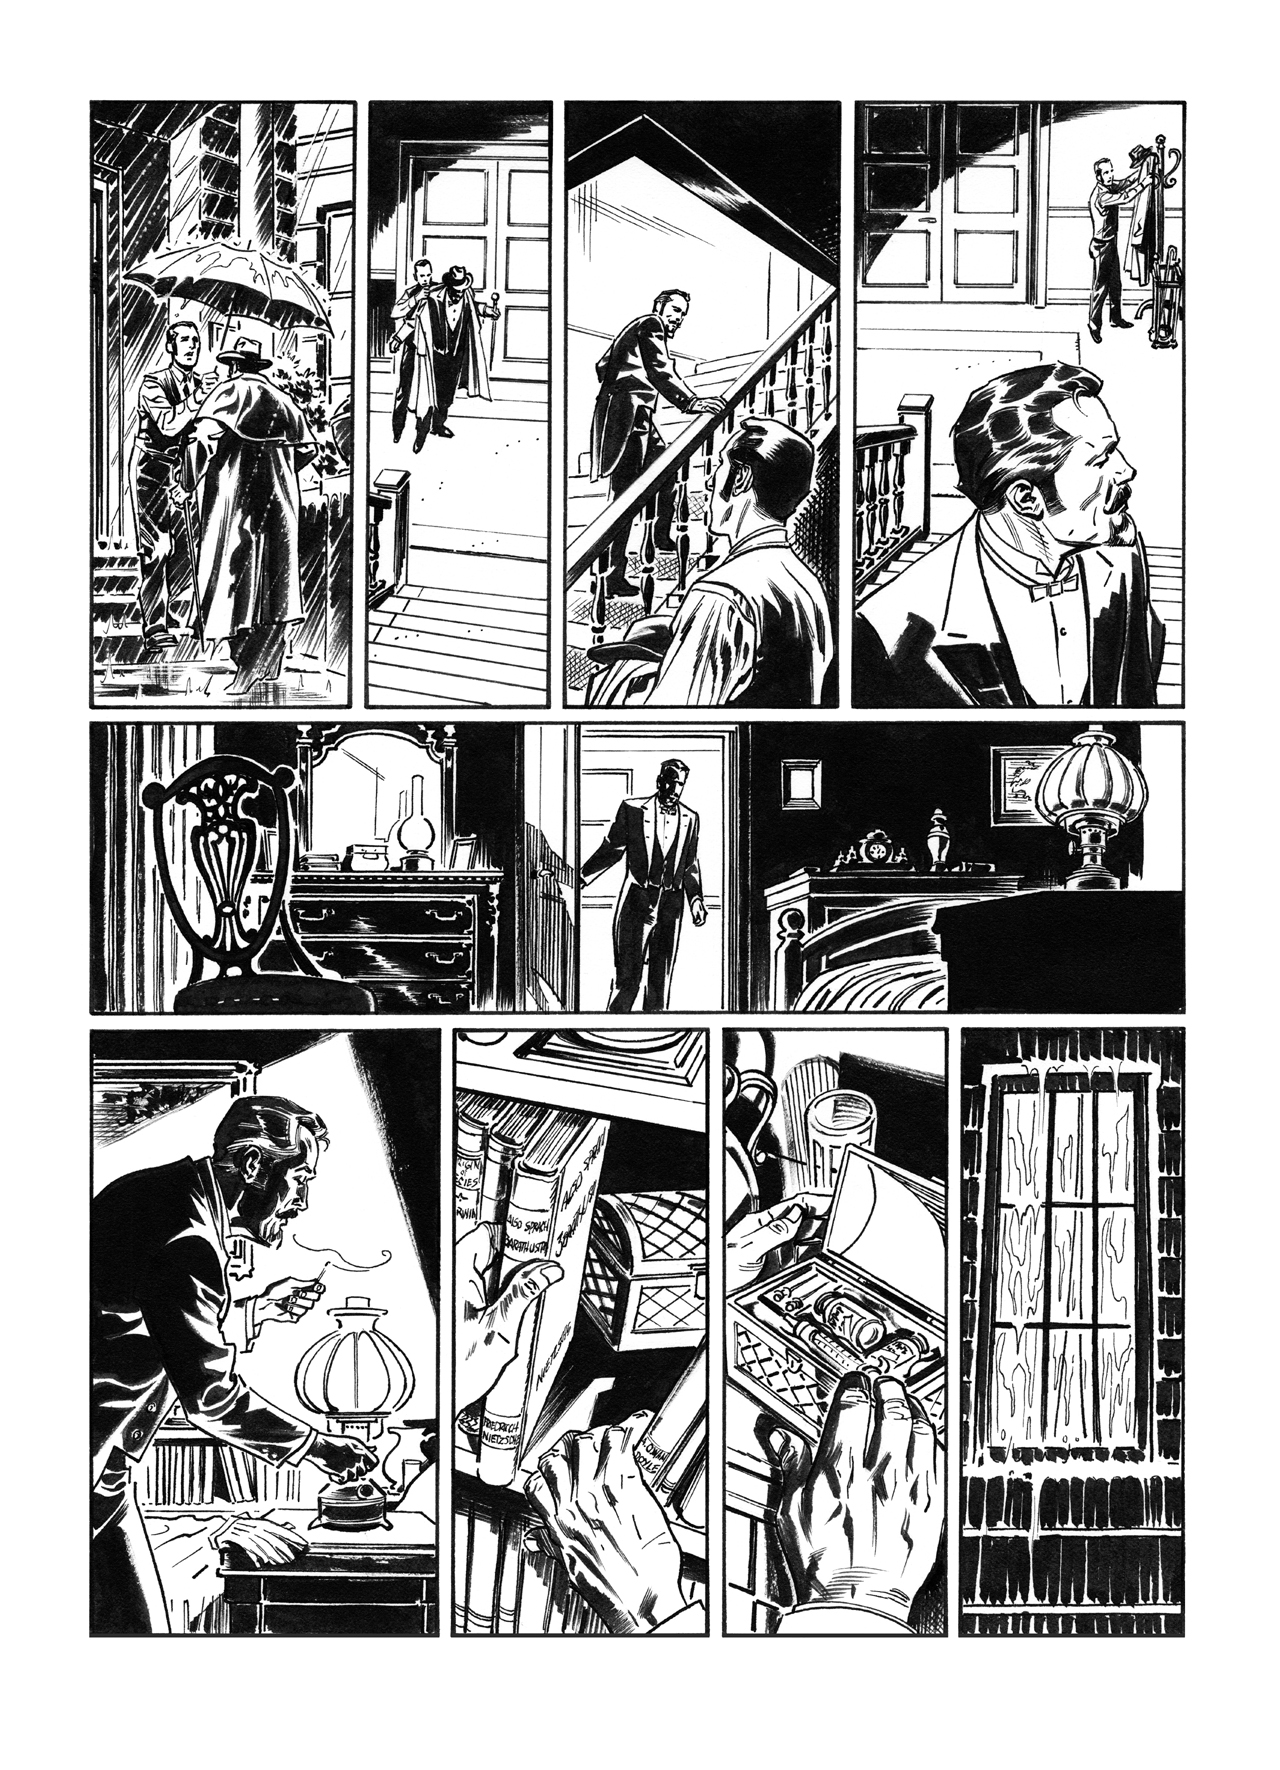 Van Helsing vs. Jack the Ripper p.14